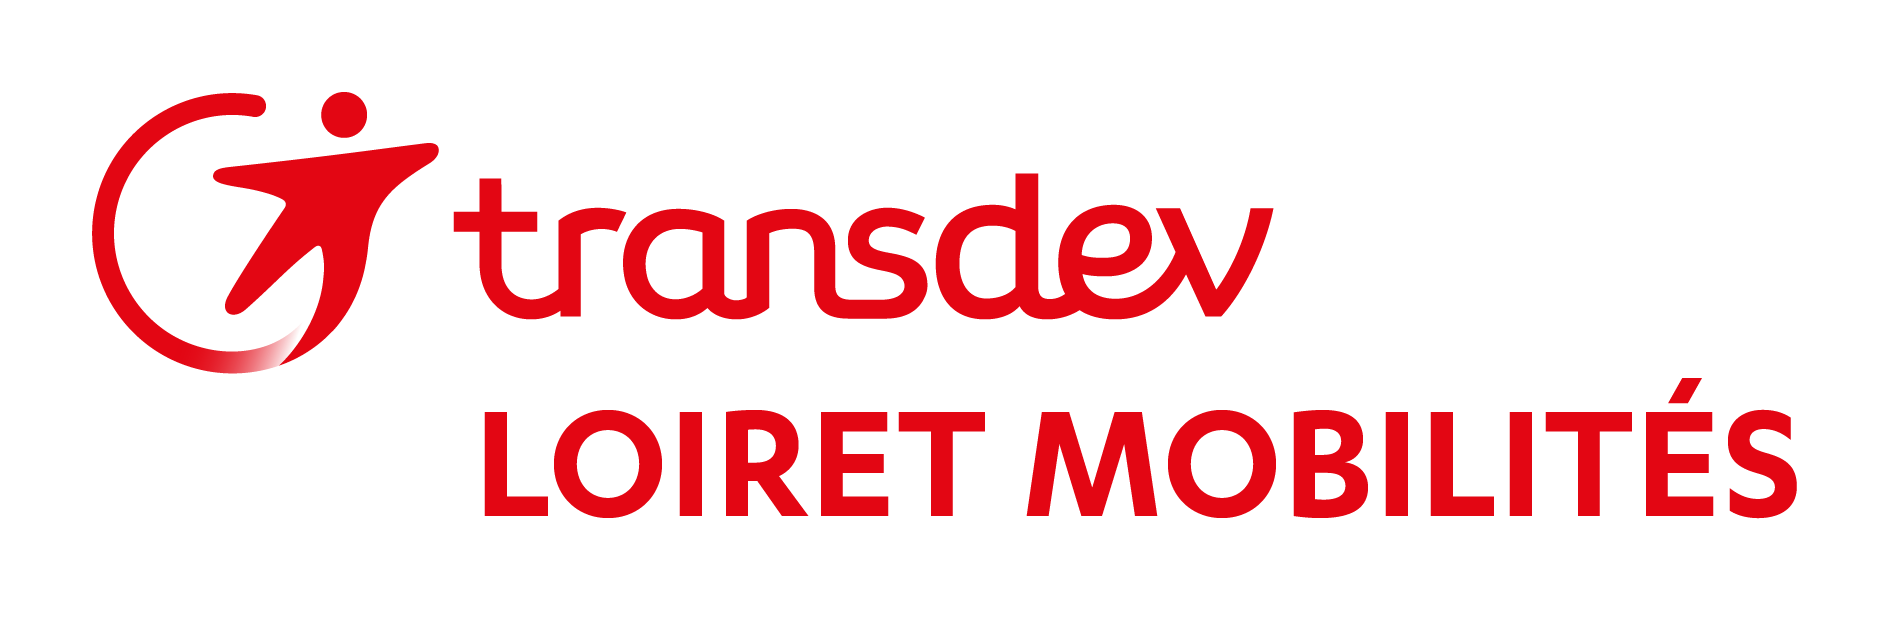 Transdev Loiret Mobilités